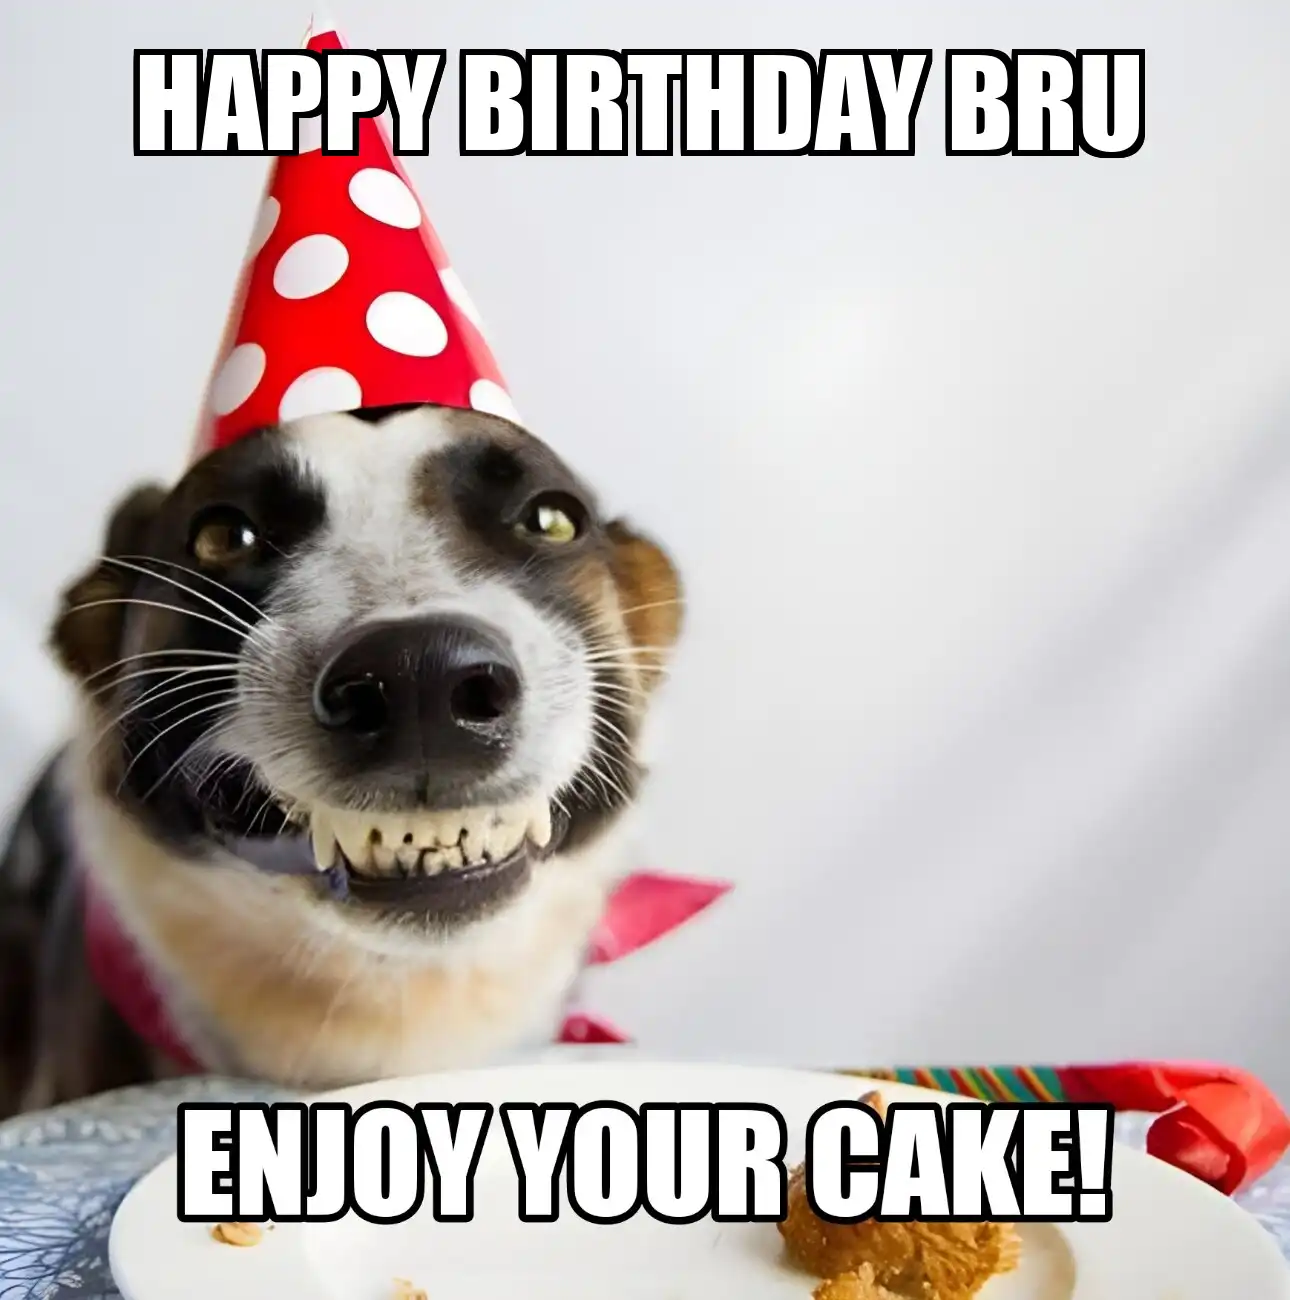 Happy Birthday Bru Enjoy Your Cake Dog Meme